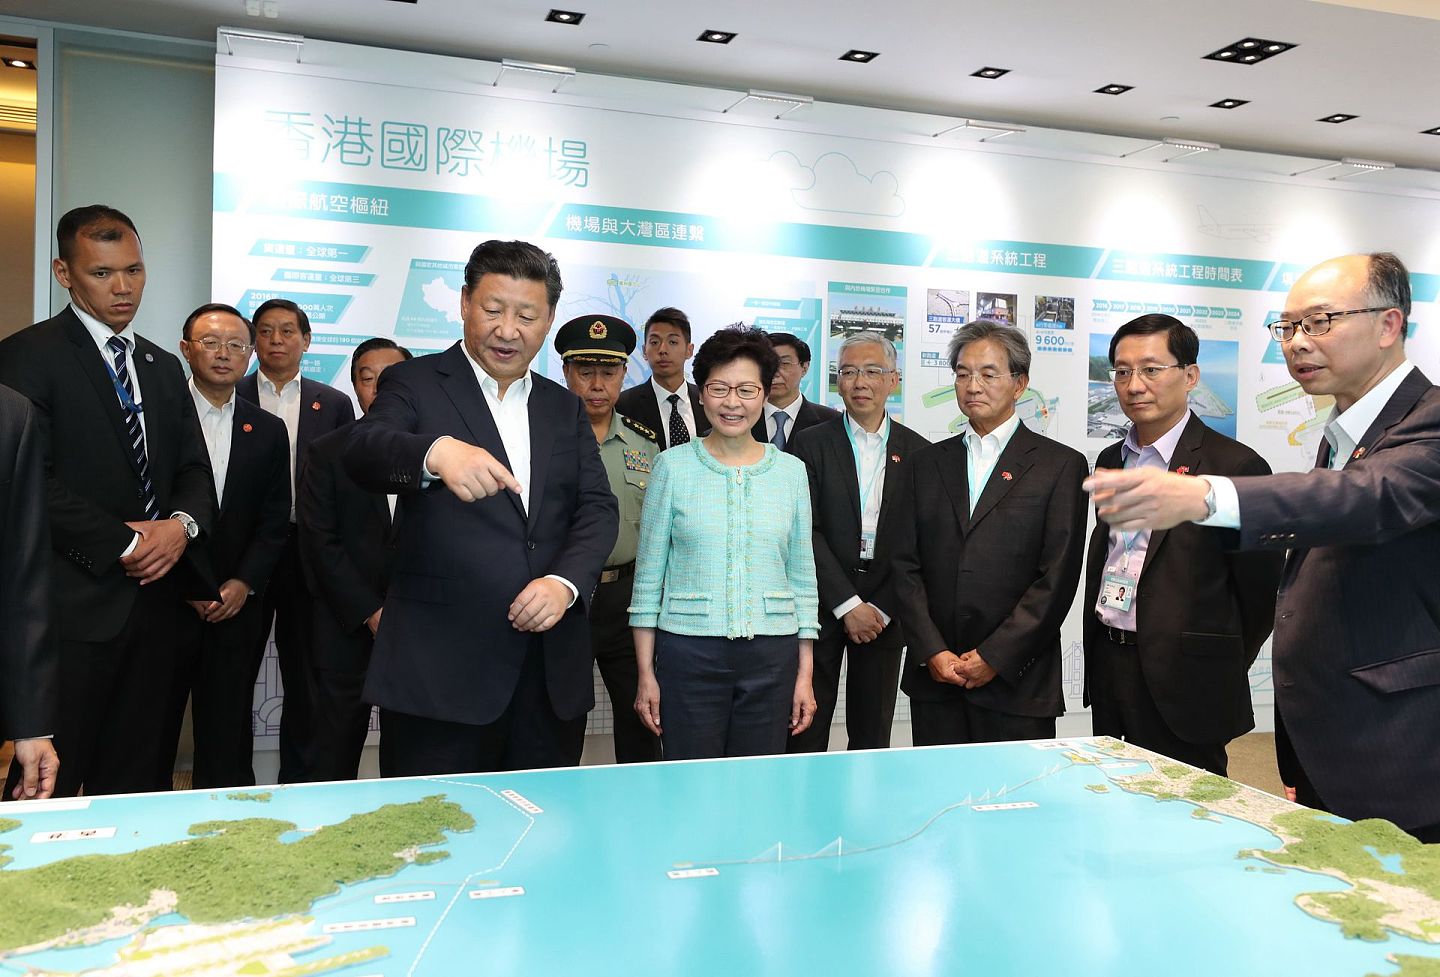 中国的粤港澳大湾区战略是香港后续发展的最大机会。 （新华社）